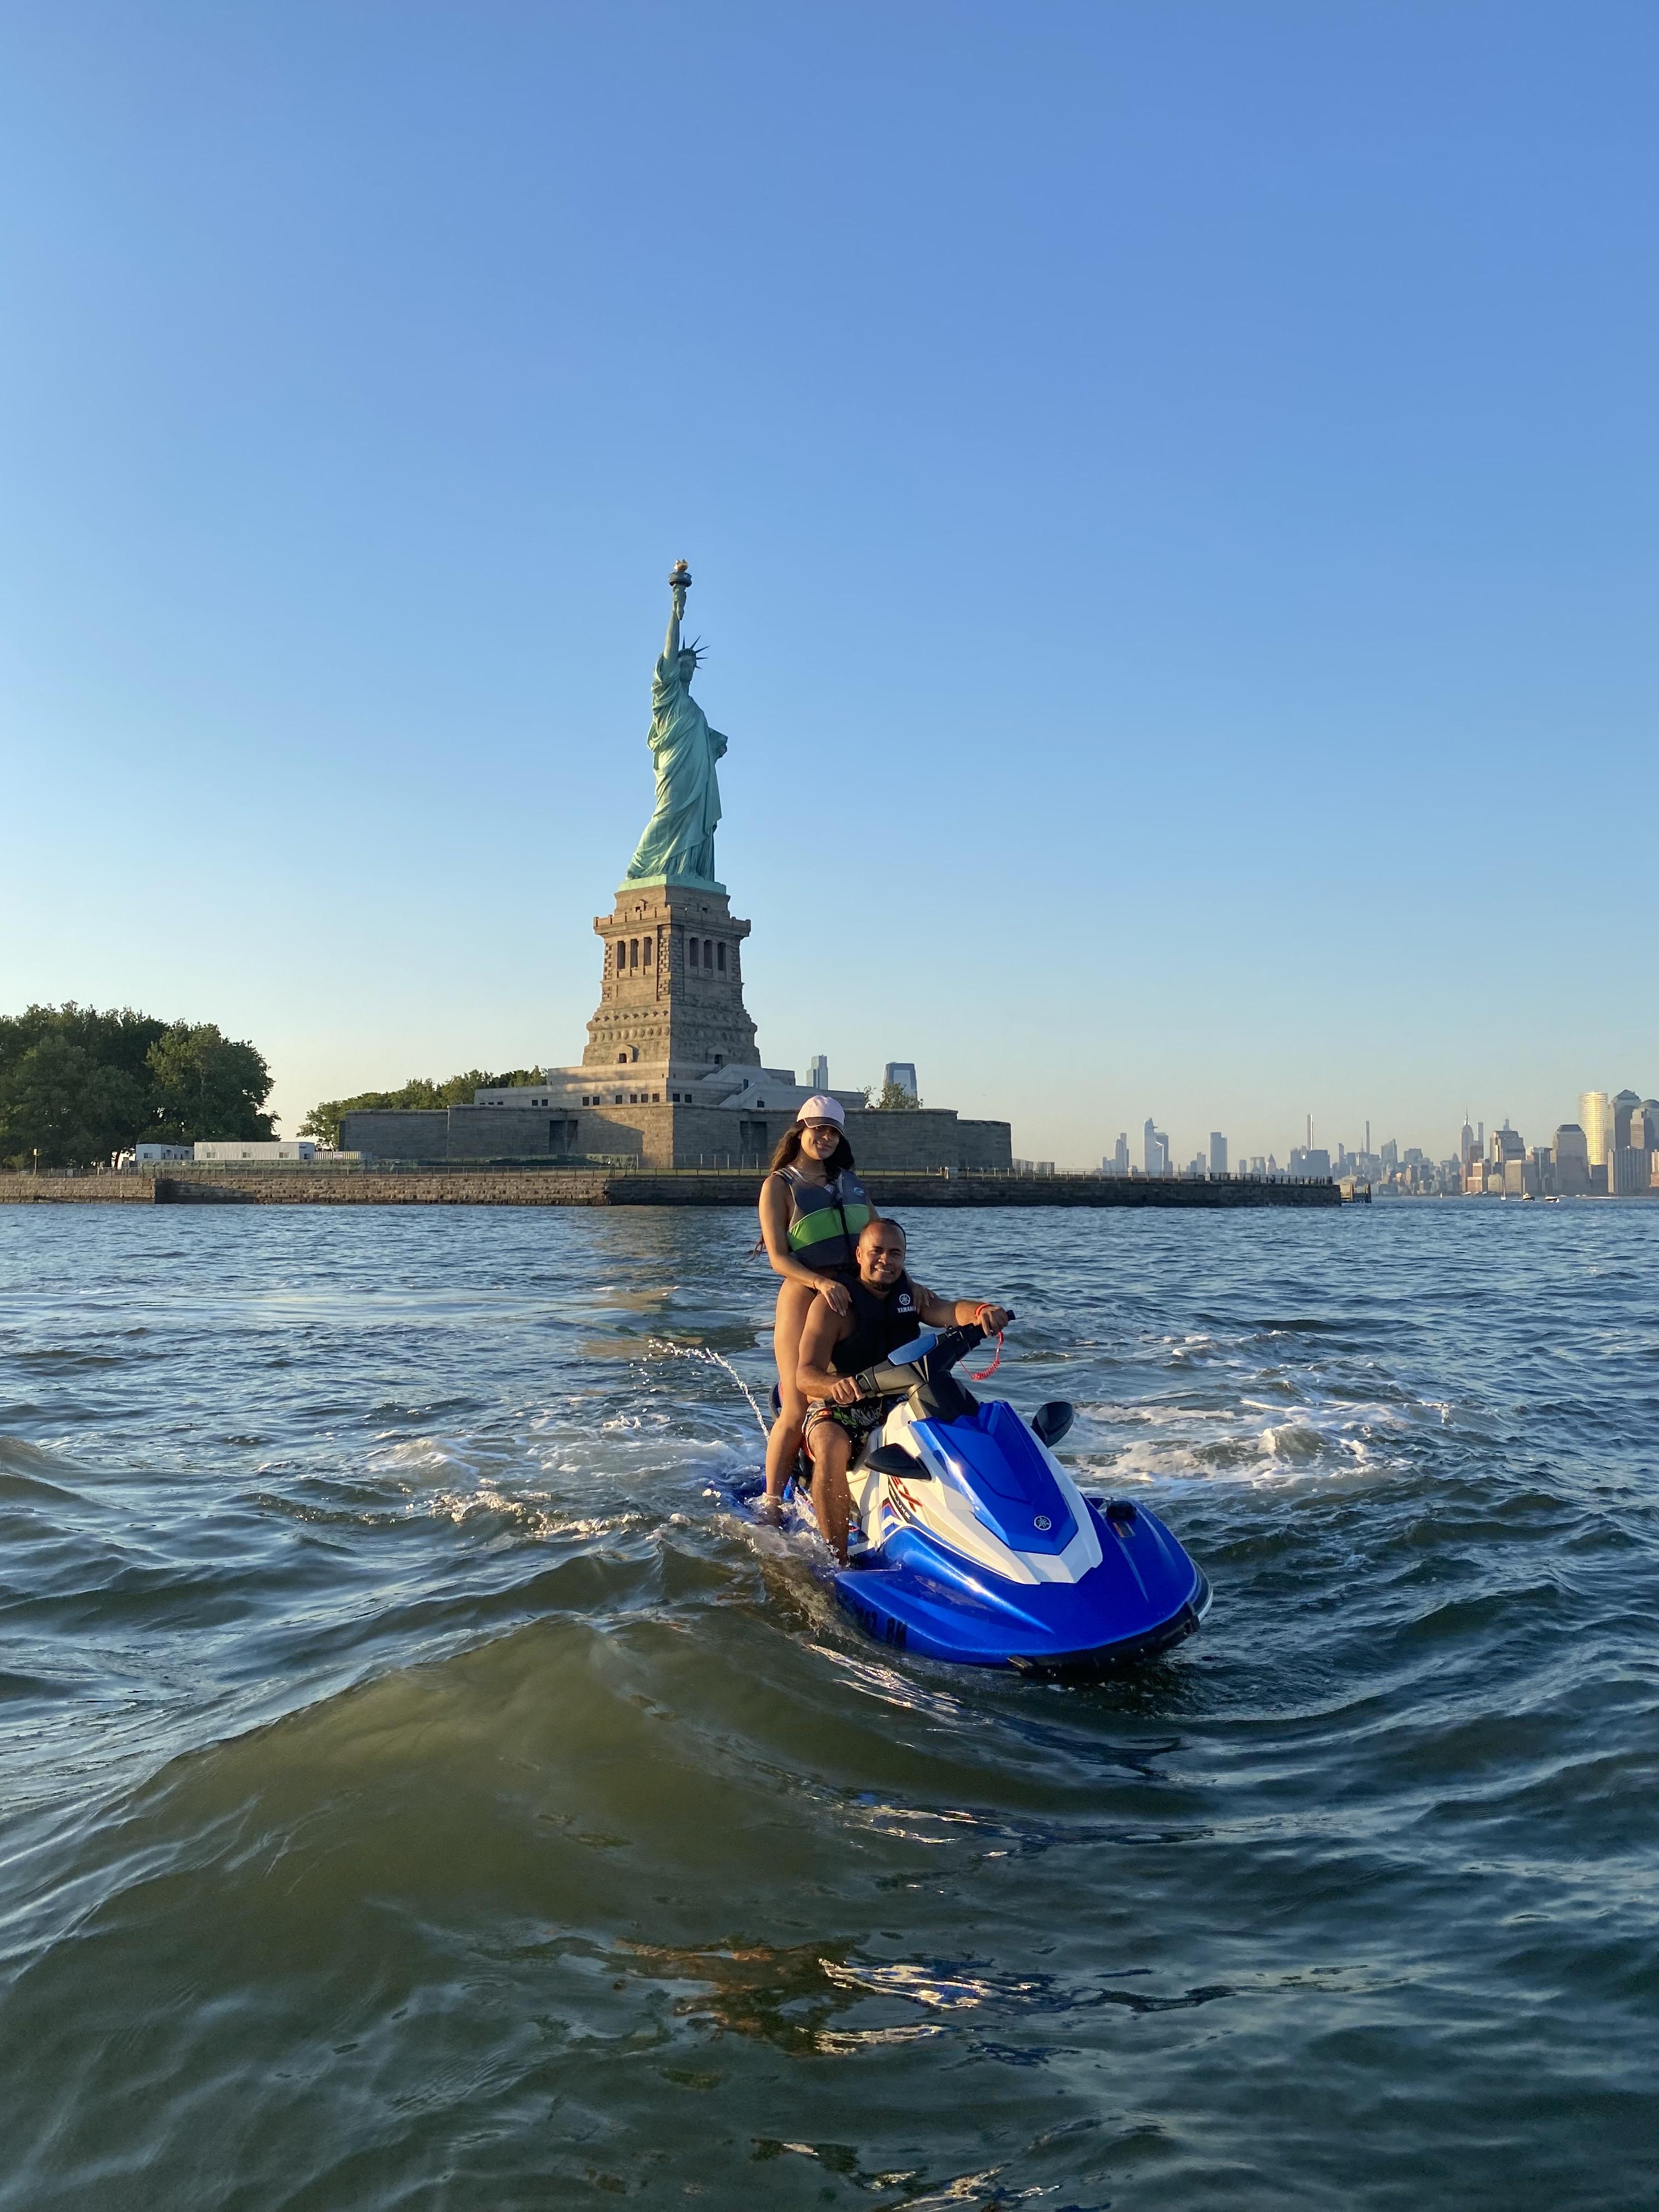 Jet Ski Rentals In New York City! |